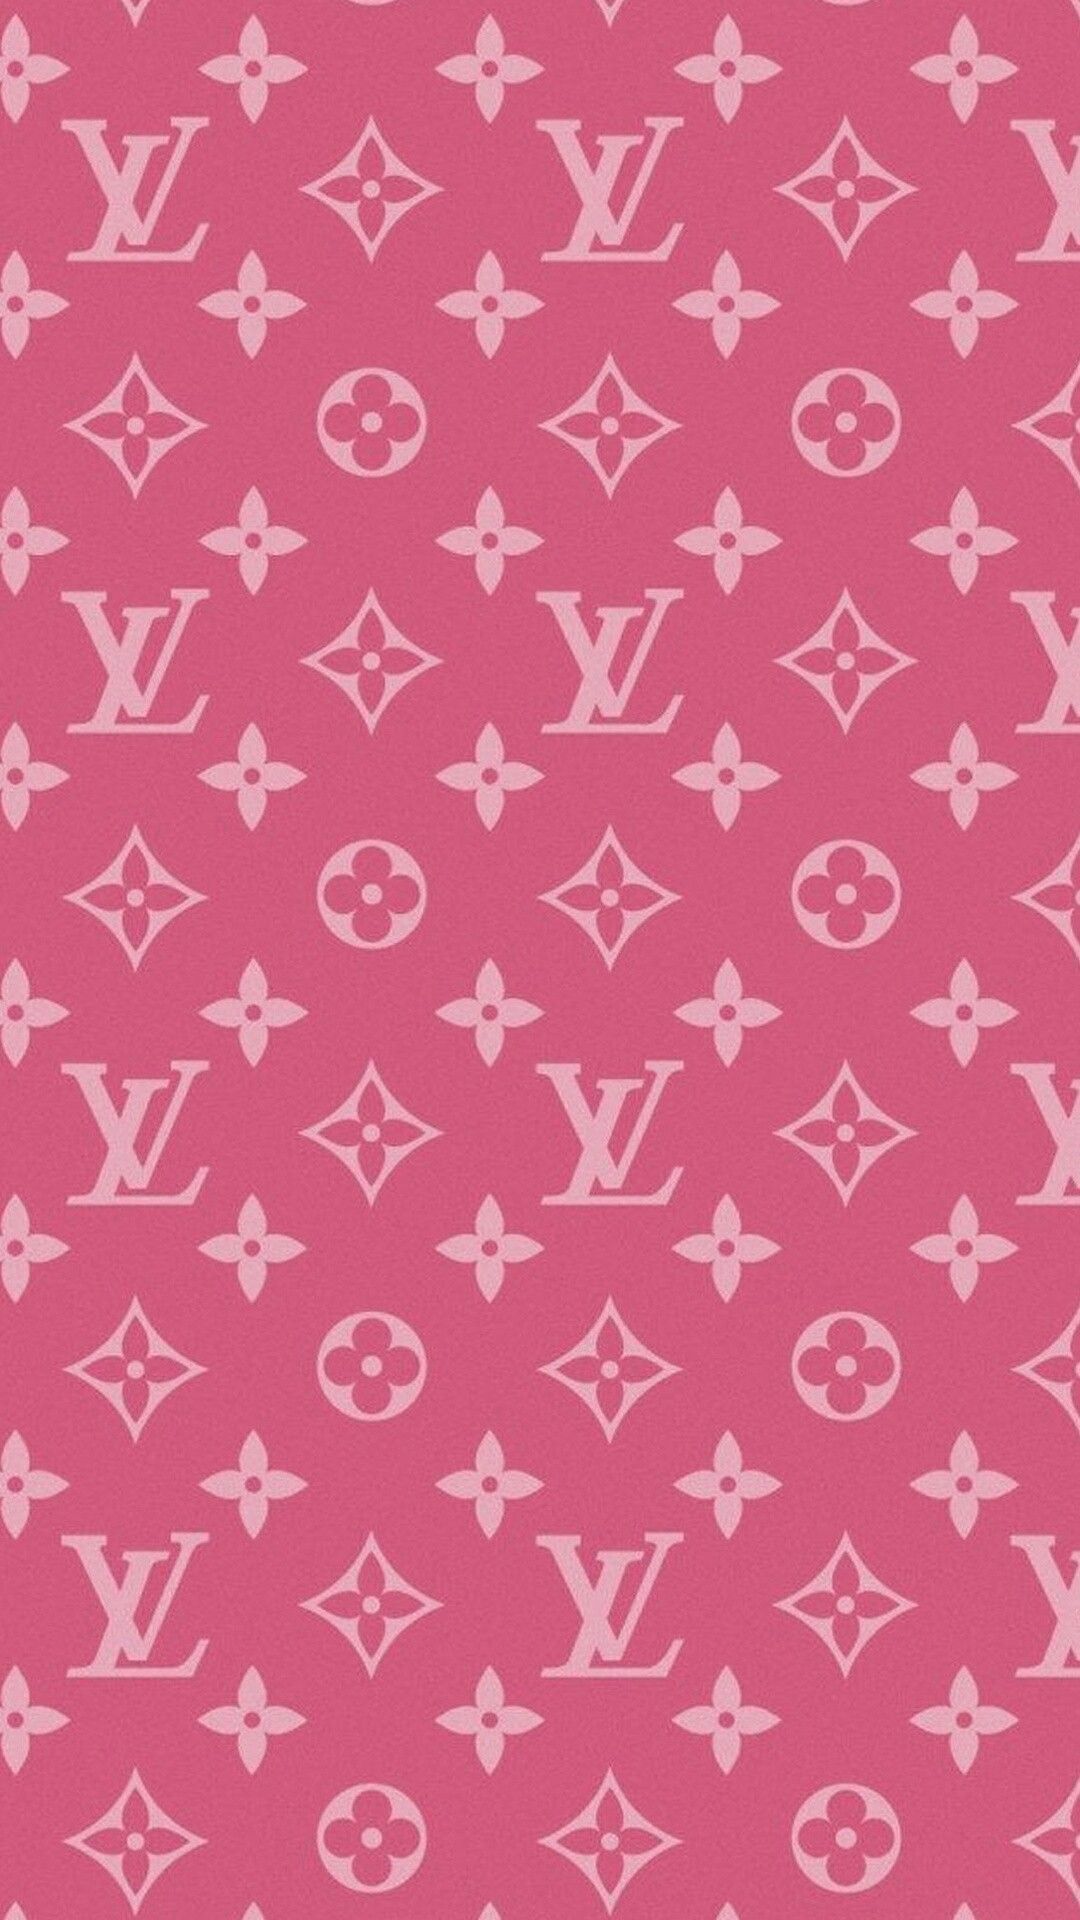 Louis Vuitton rosa | Louis vuitton en 2019 | Fondos de pantalla para iphone